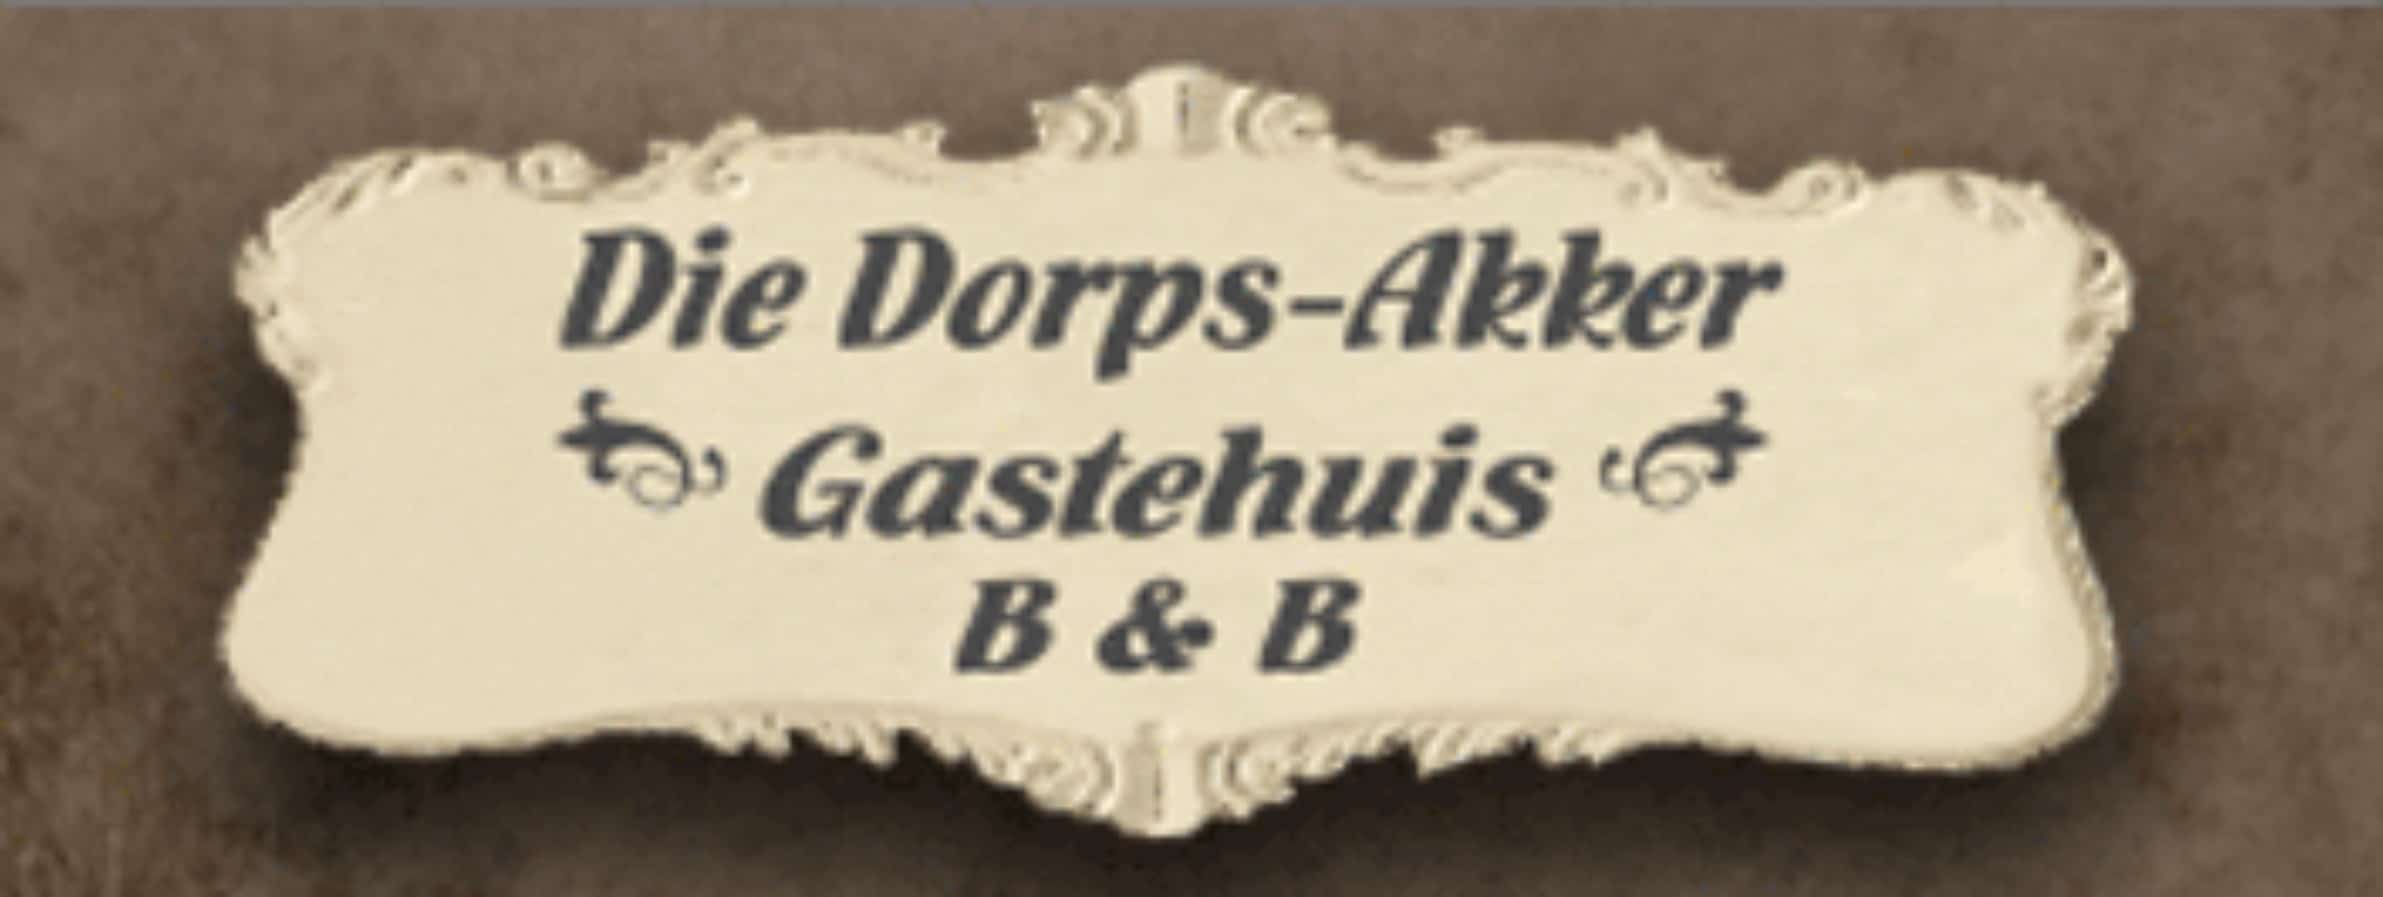 Die Dorps-Akker Guest House Heidelberg 6